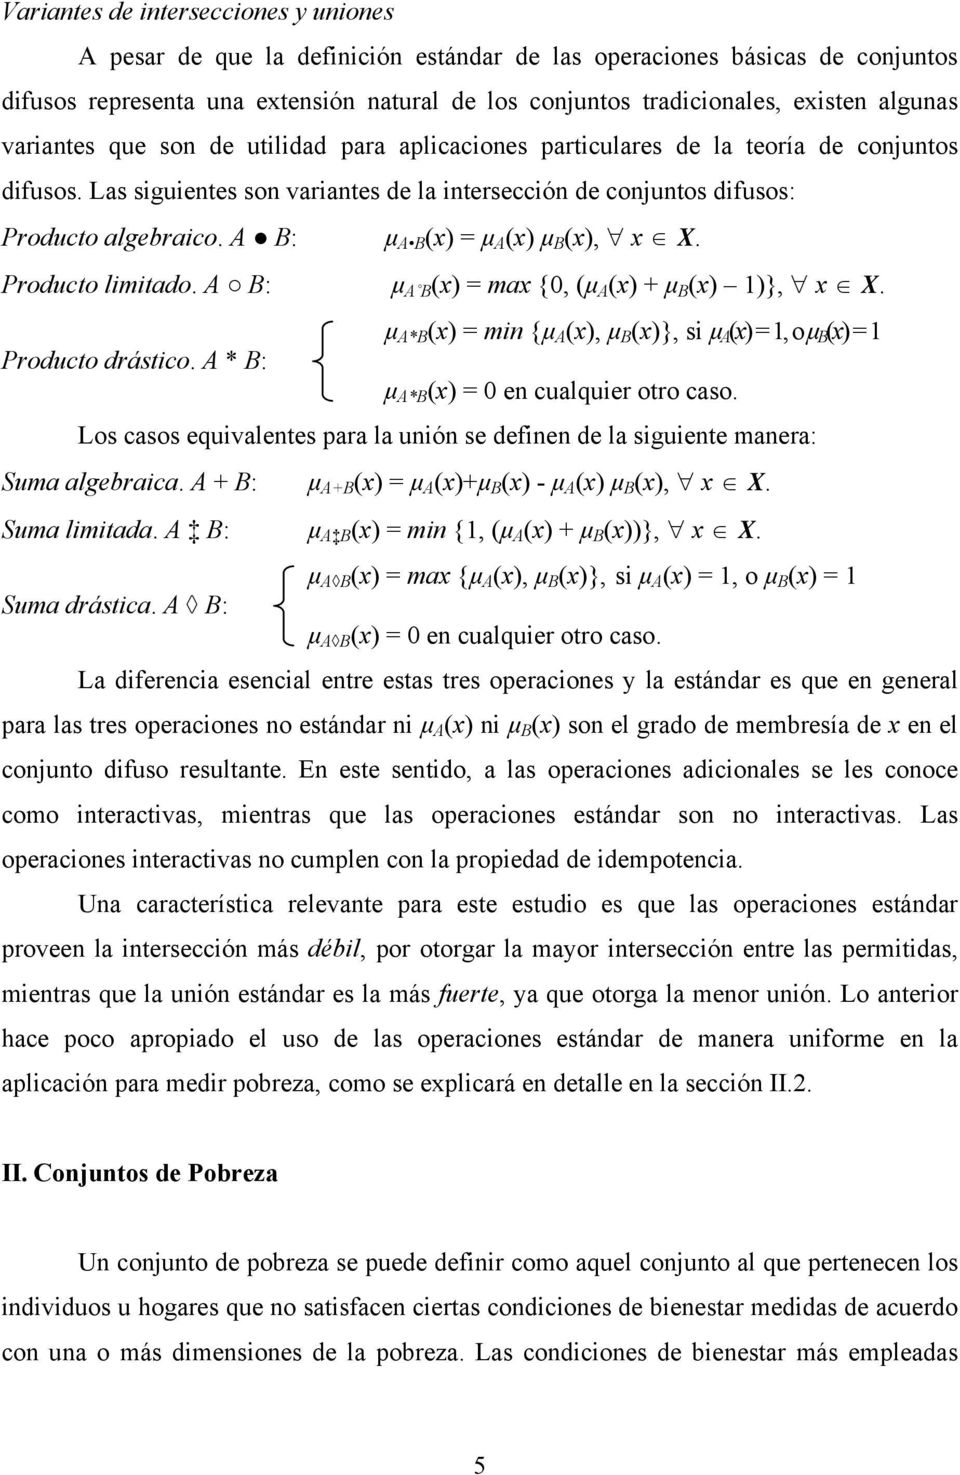 A B: μ A B (x) = μ A (x) μ B (x), x X. Producto lmtado. A B: μ A B (x) = max {0, (μ A (x) + μ B (x) 1)}, x X. μ A*B (x) = mn {μ A (x), μ B (x)}, s μ A (x) = 1, o μ B (x) = 1 Producto drástco.